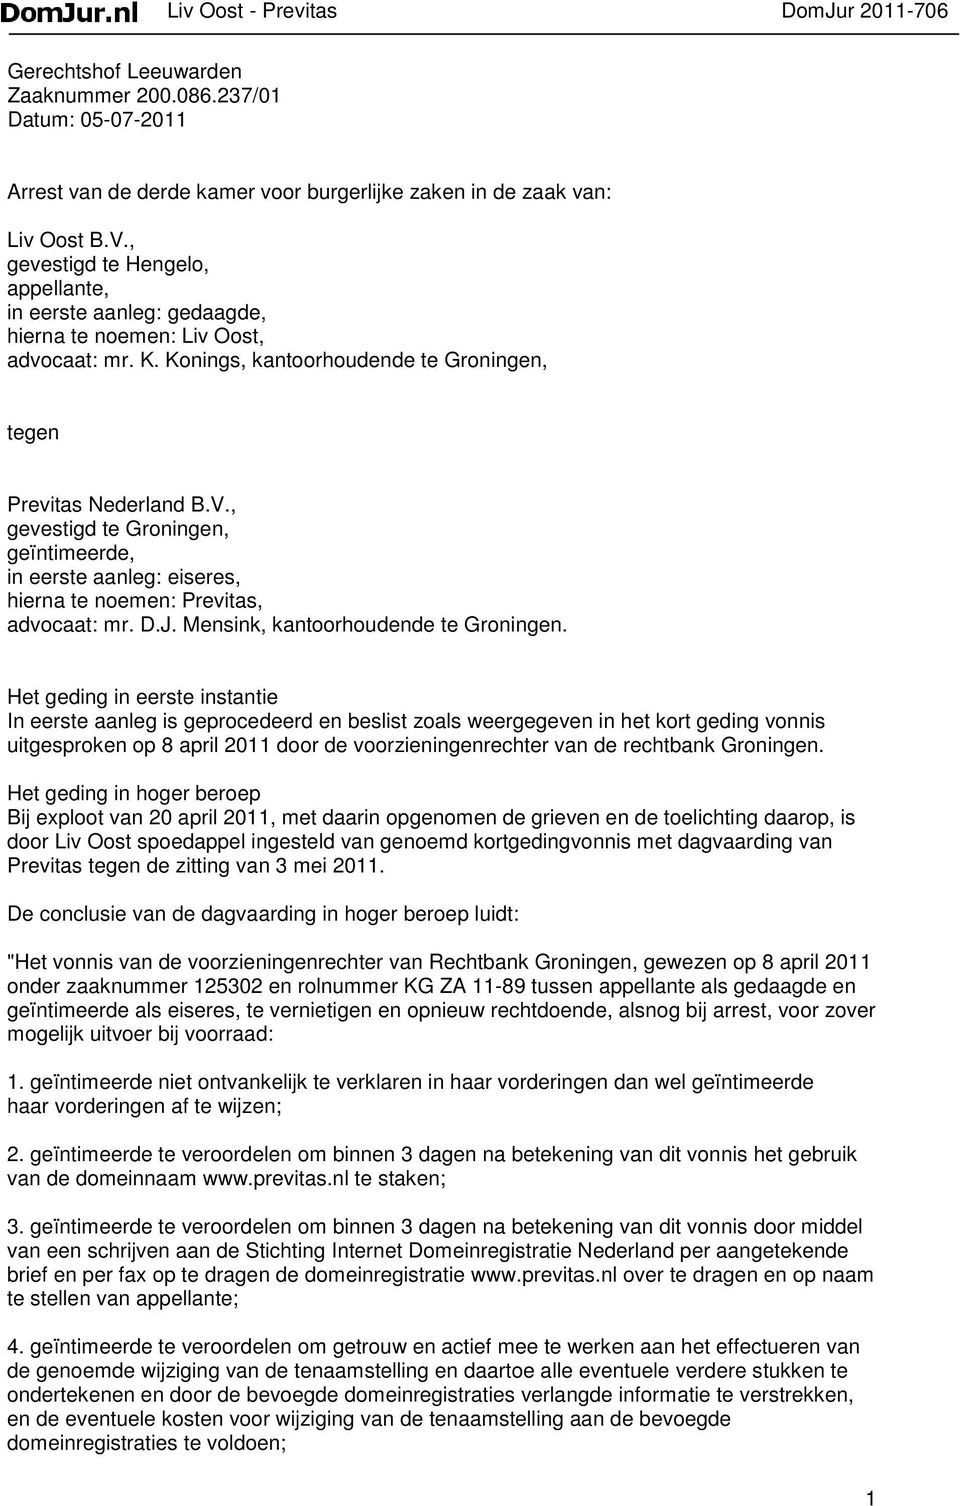 , gevestigd te Groningen, geïntimeerde, in eerste aanleg: eiseres, hierna te noemen: Previtas, advocaat: mr. D.J. Mensink, kantoorhoudende te Groningen.